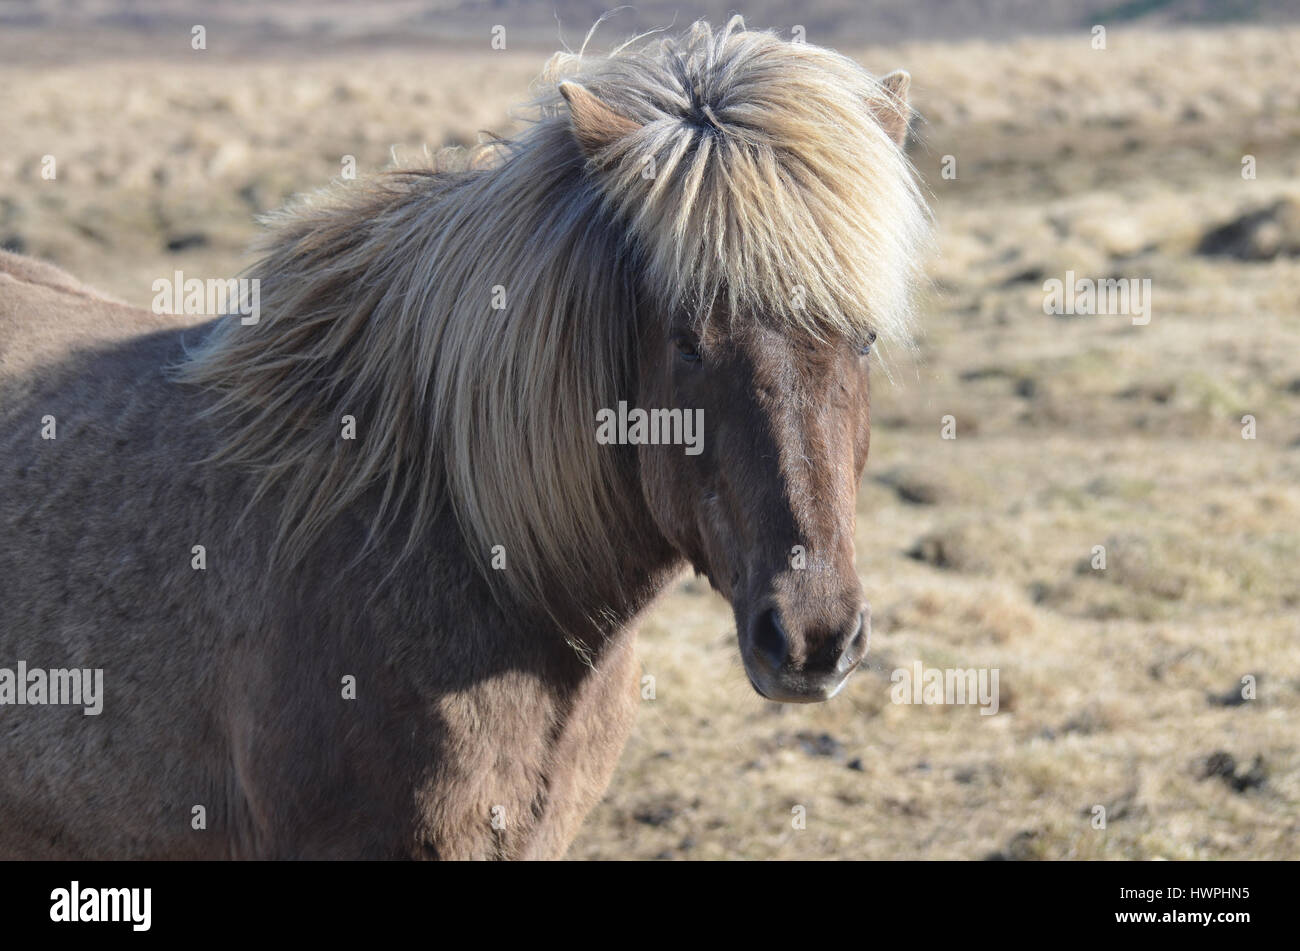 Great Icelandic horse soaking up the sunshine. Stock Photo